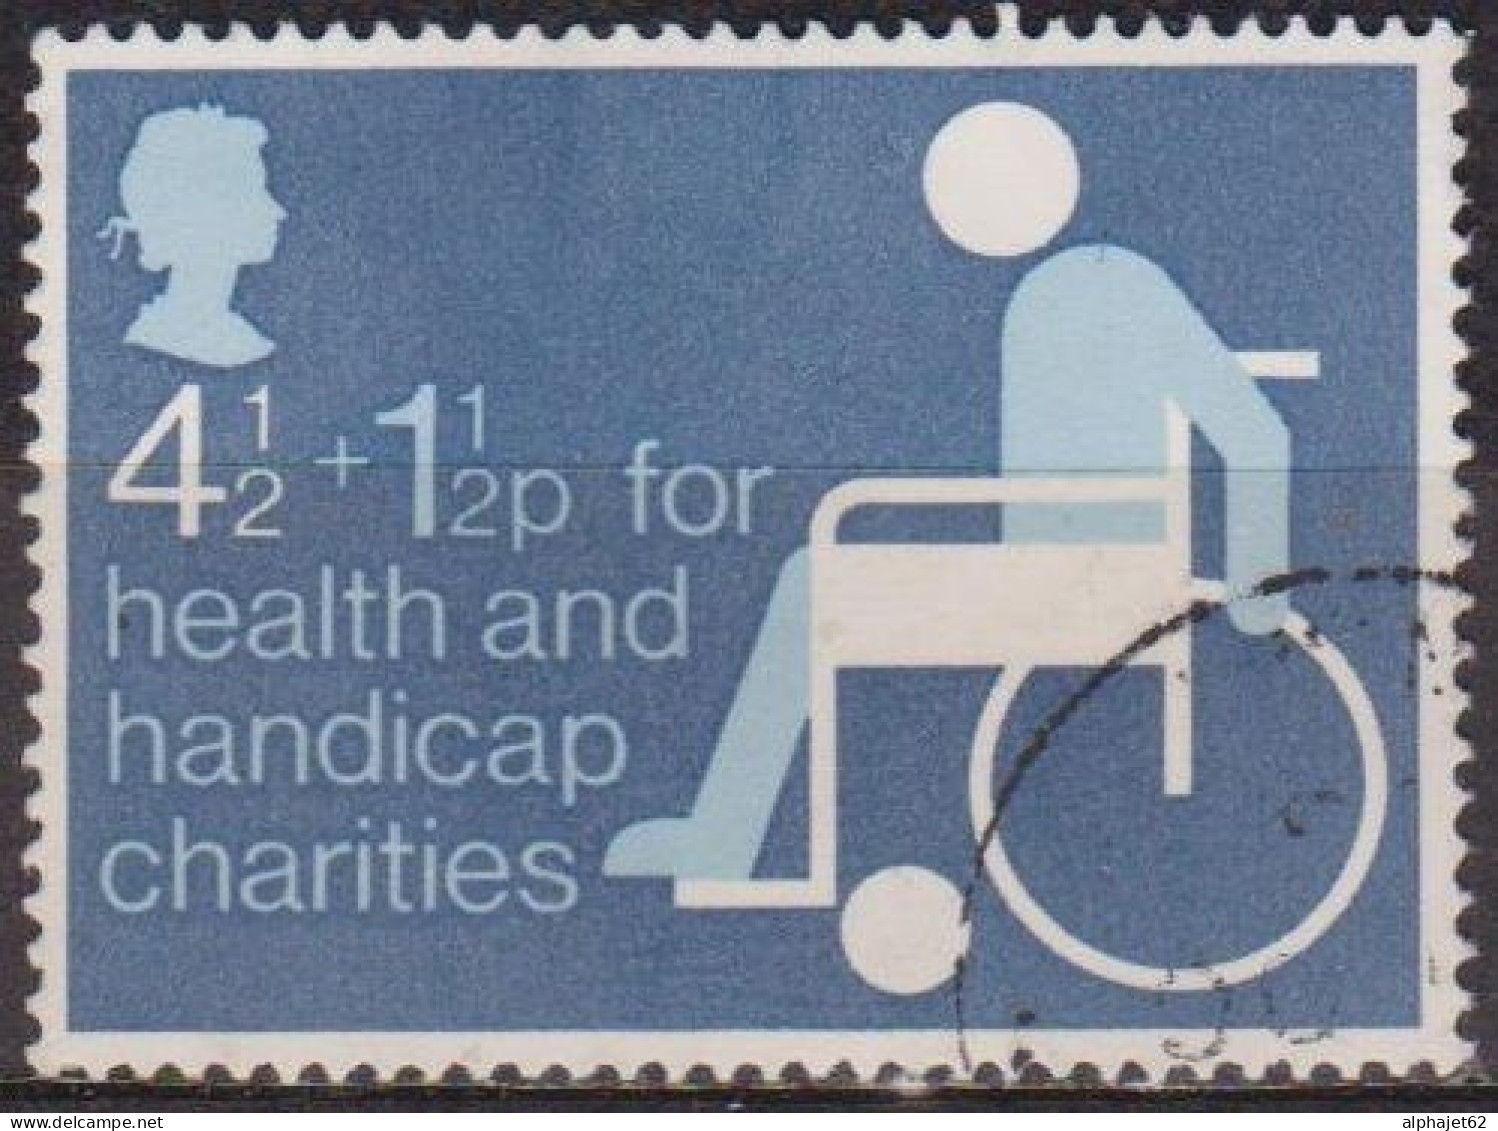 Bienfaisance - GRANDE BRETAGNE - Au Profit Des Handicapés - N° 746 - 1975 - Usati